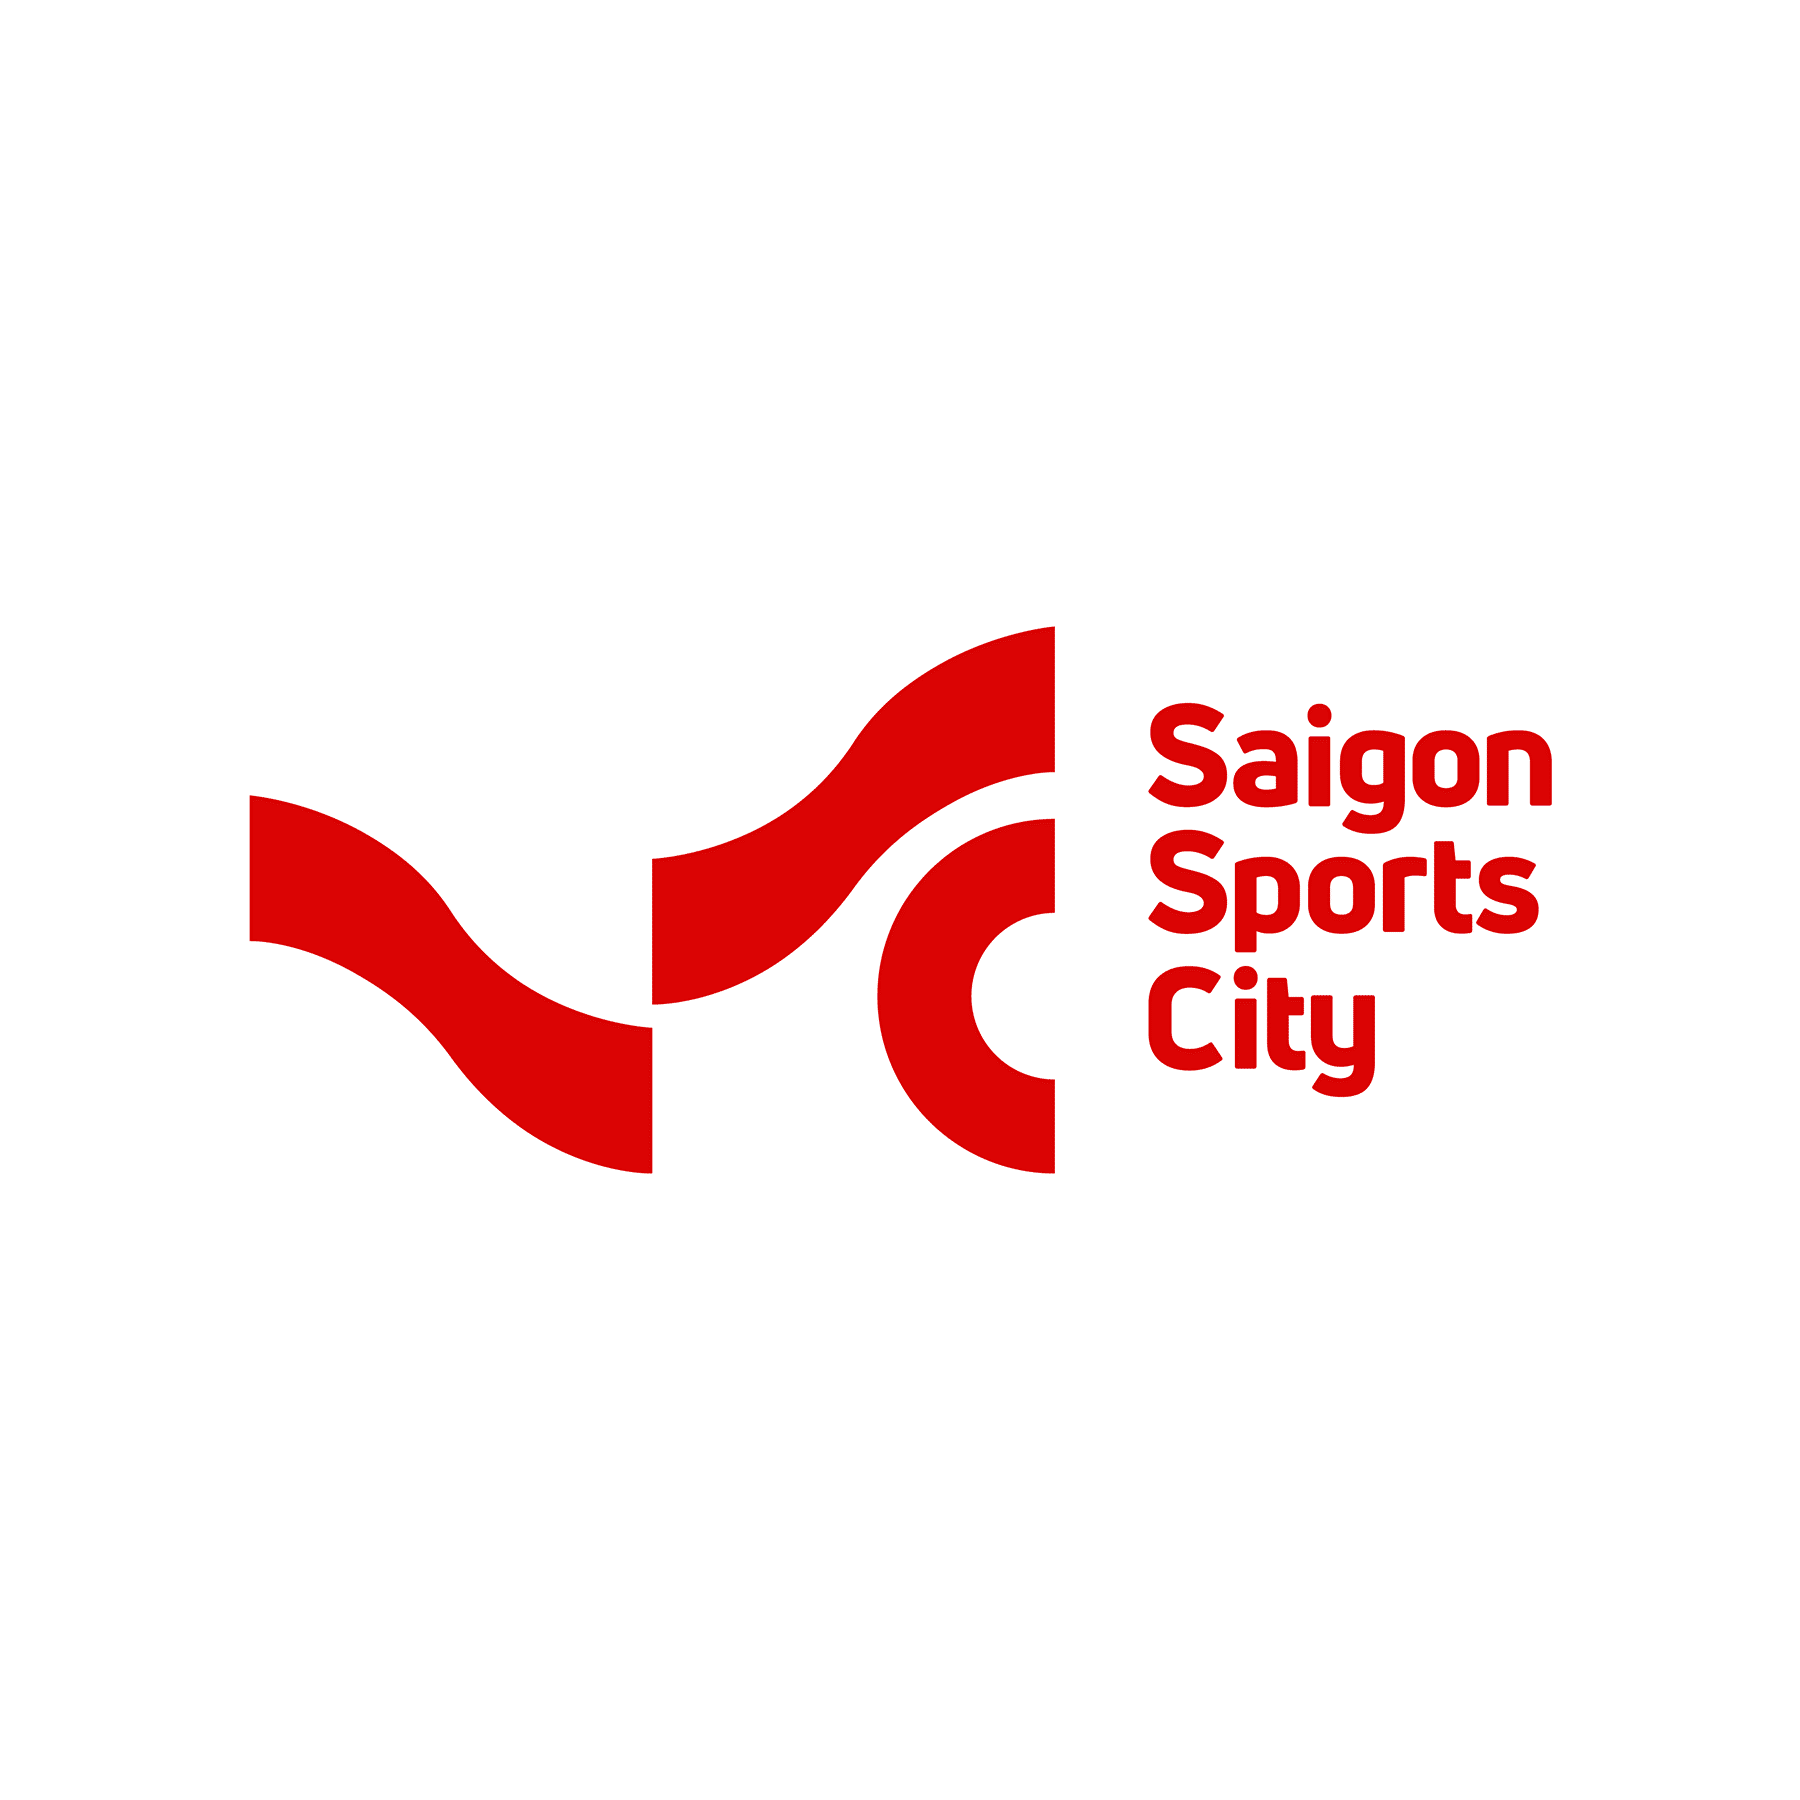 Saigon Sports City giành giải Vàng tại Transform Awards khu vực Châu Á 2021 - Ảnh 1.